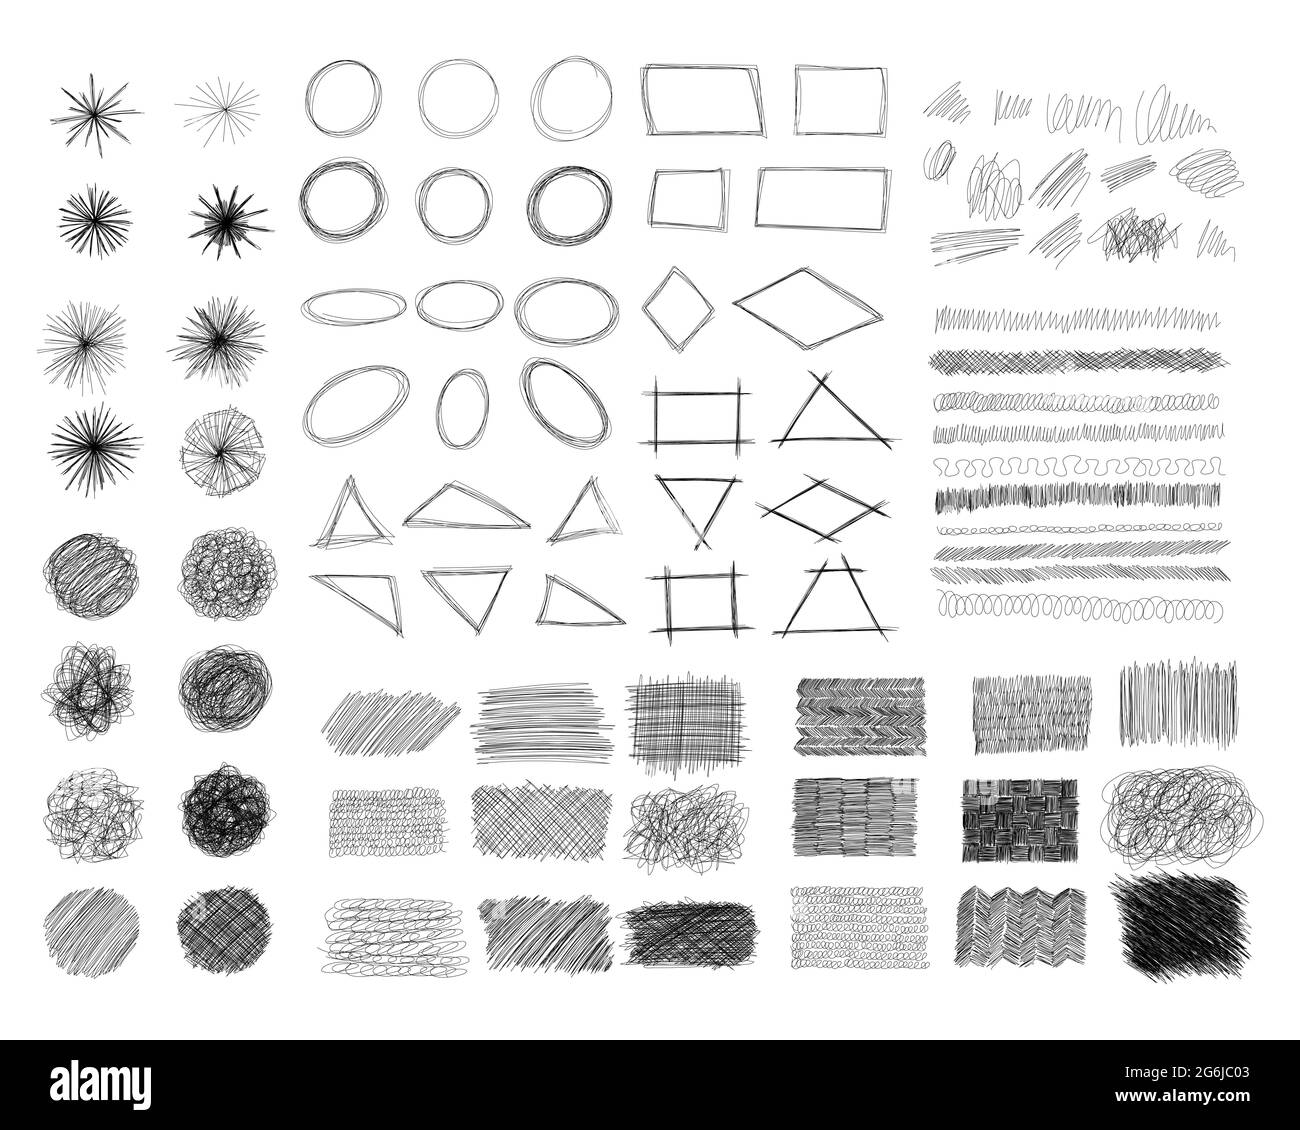 Tintenstift Scrawl Collection - verschiedene Formen von handgezeichneten Scribble Linie Zeichnungen. Stock Vektor